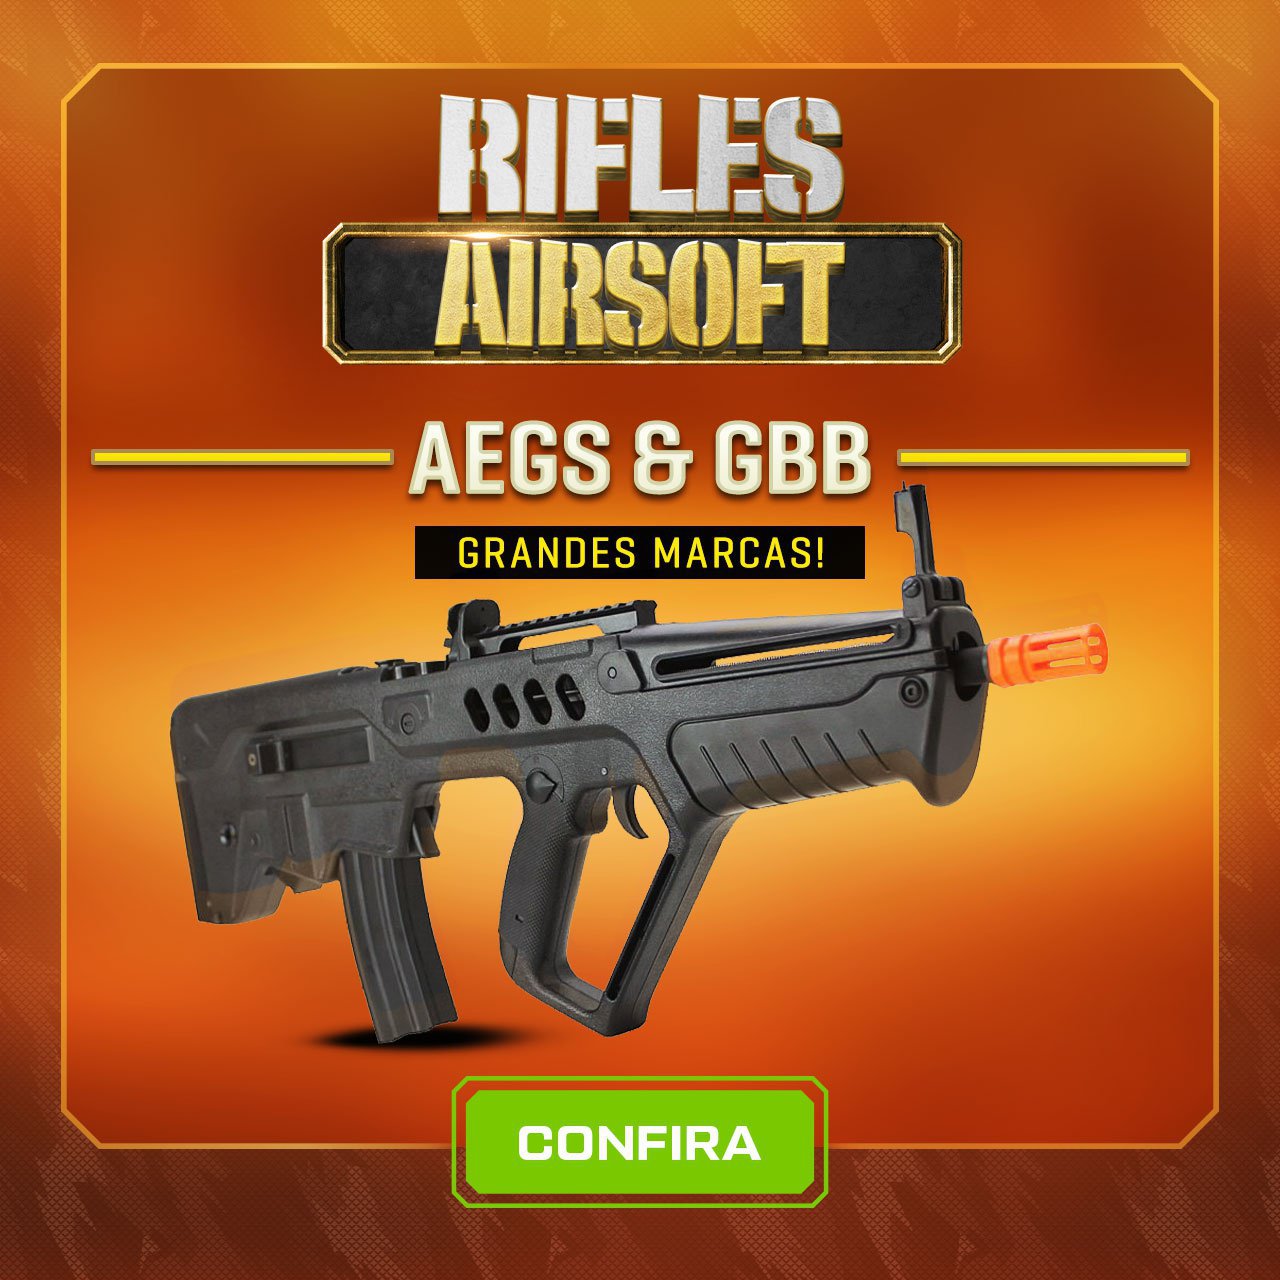 Rifles Airsoft - AEGs & GBB - Grandes Marcas!